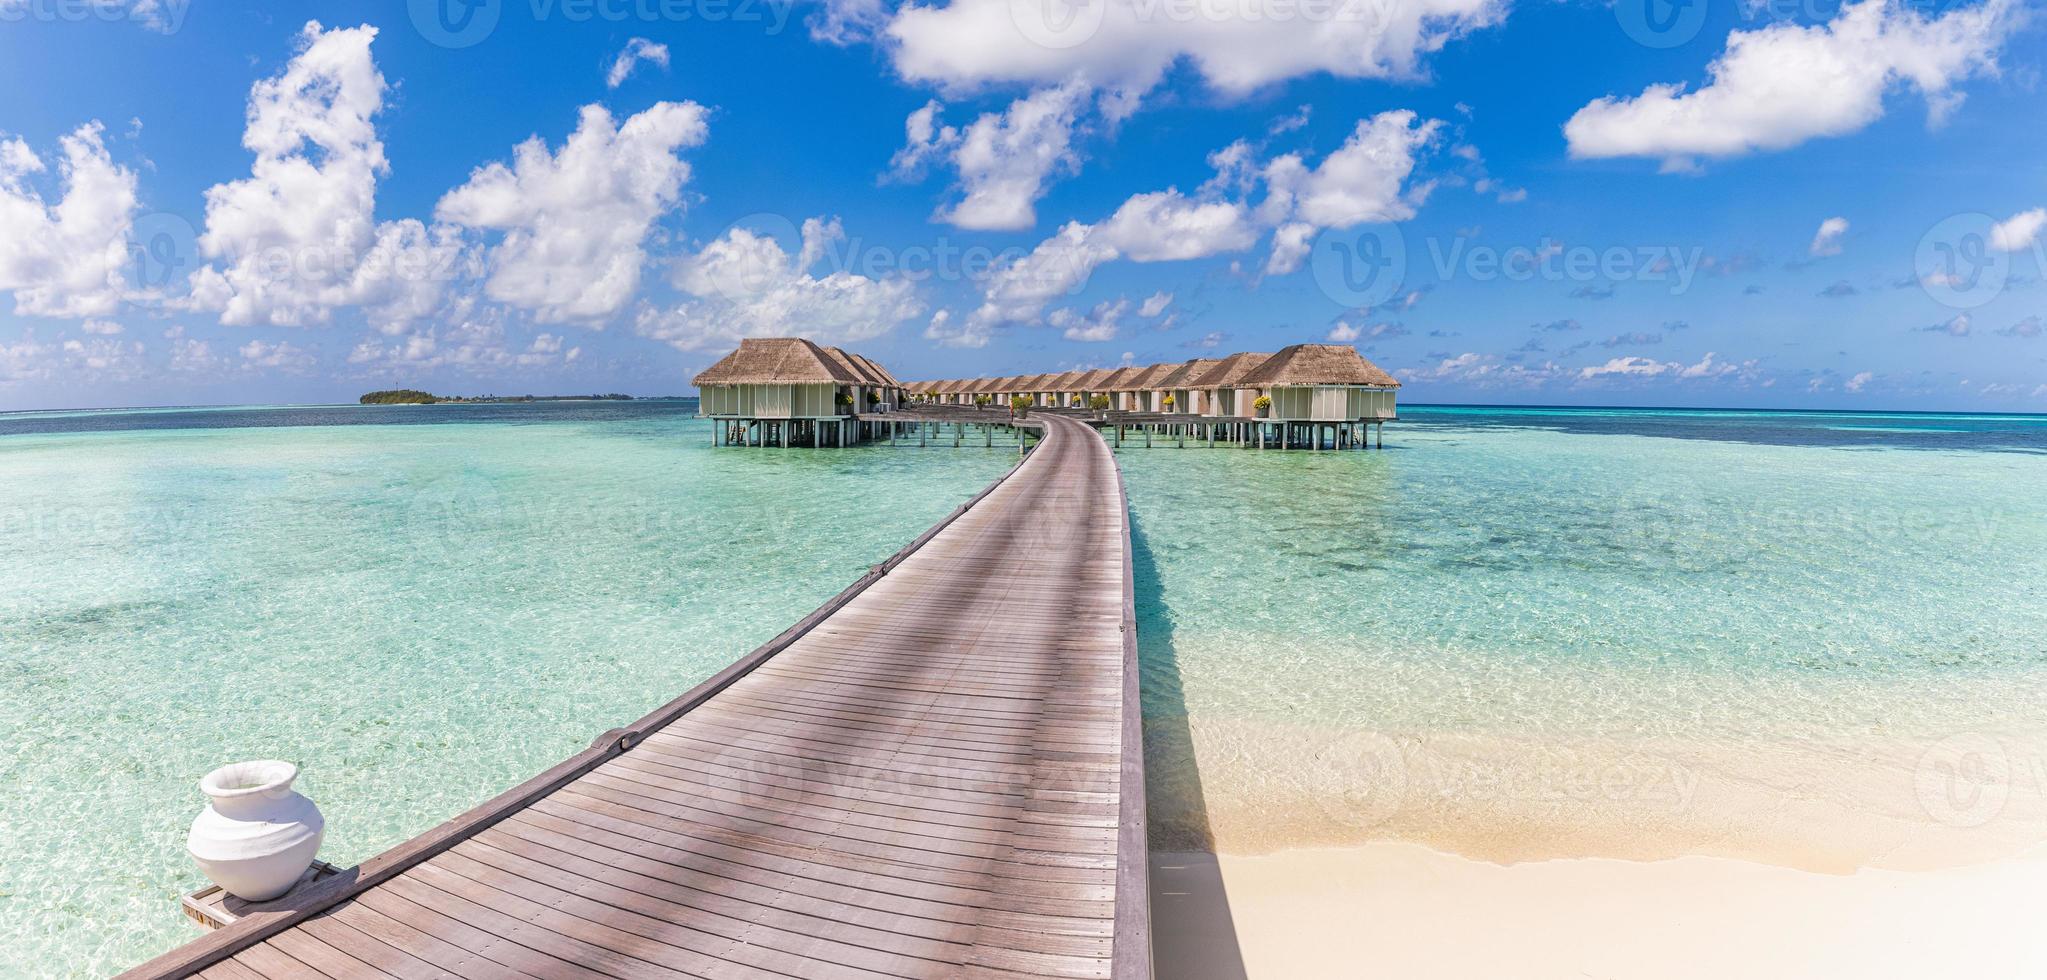 belle villa sur l'eau des maldives dans le lagon bleu et l'espace ciel bleu. paysage d'été panoramique, lagon océanique avec un ciel bleu nuageux idyllique relaxant. fond de voyage de luxe exotique. vue imprenable sur les maldives photo